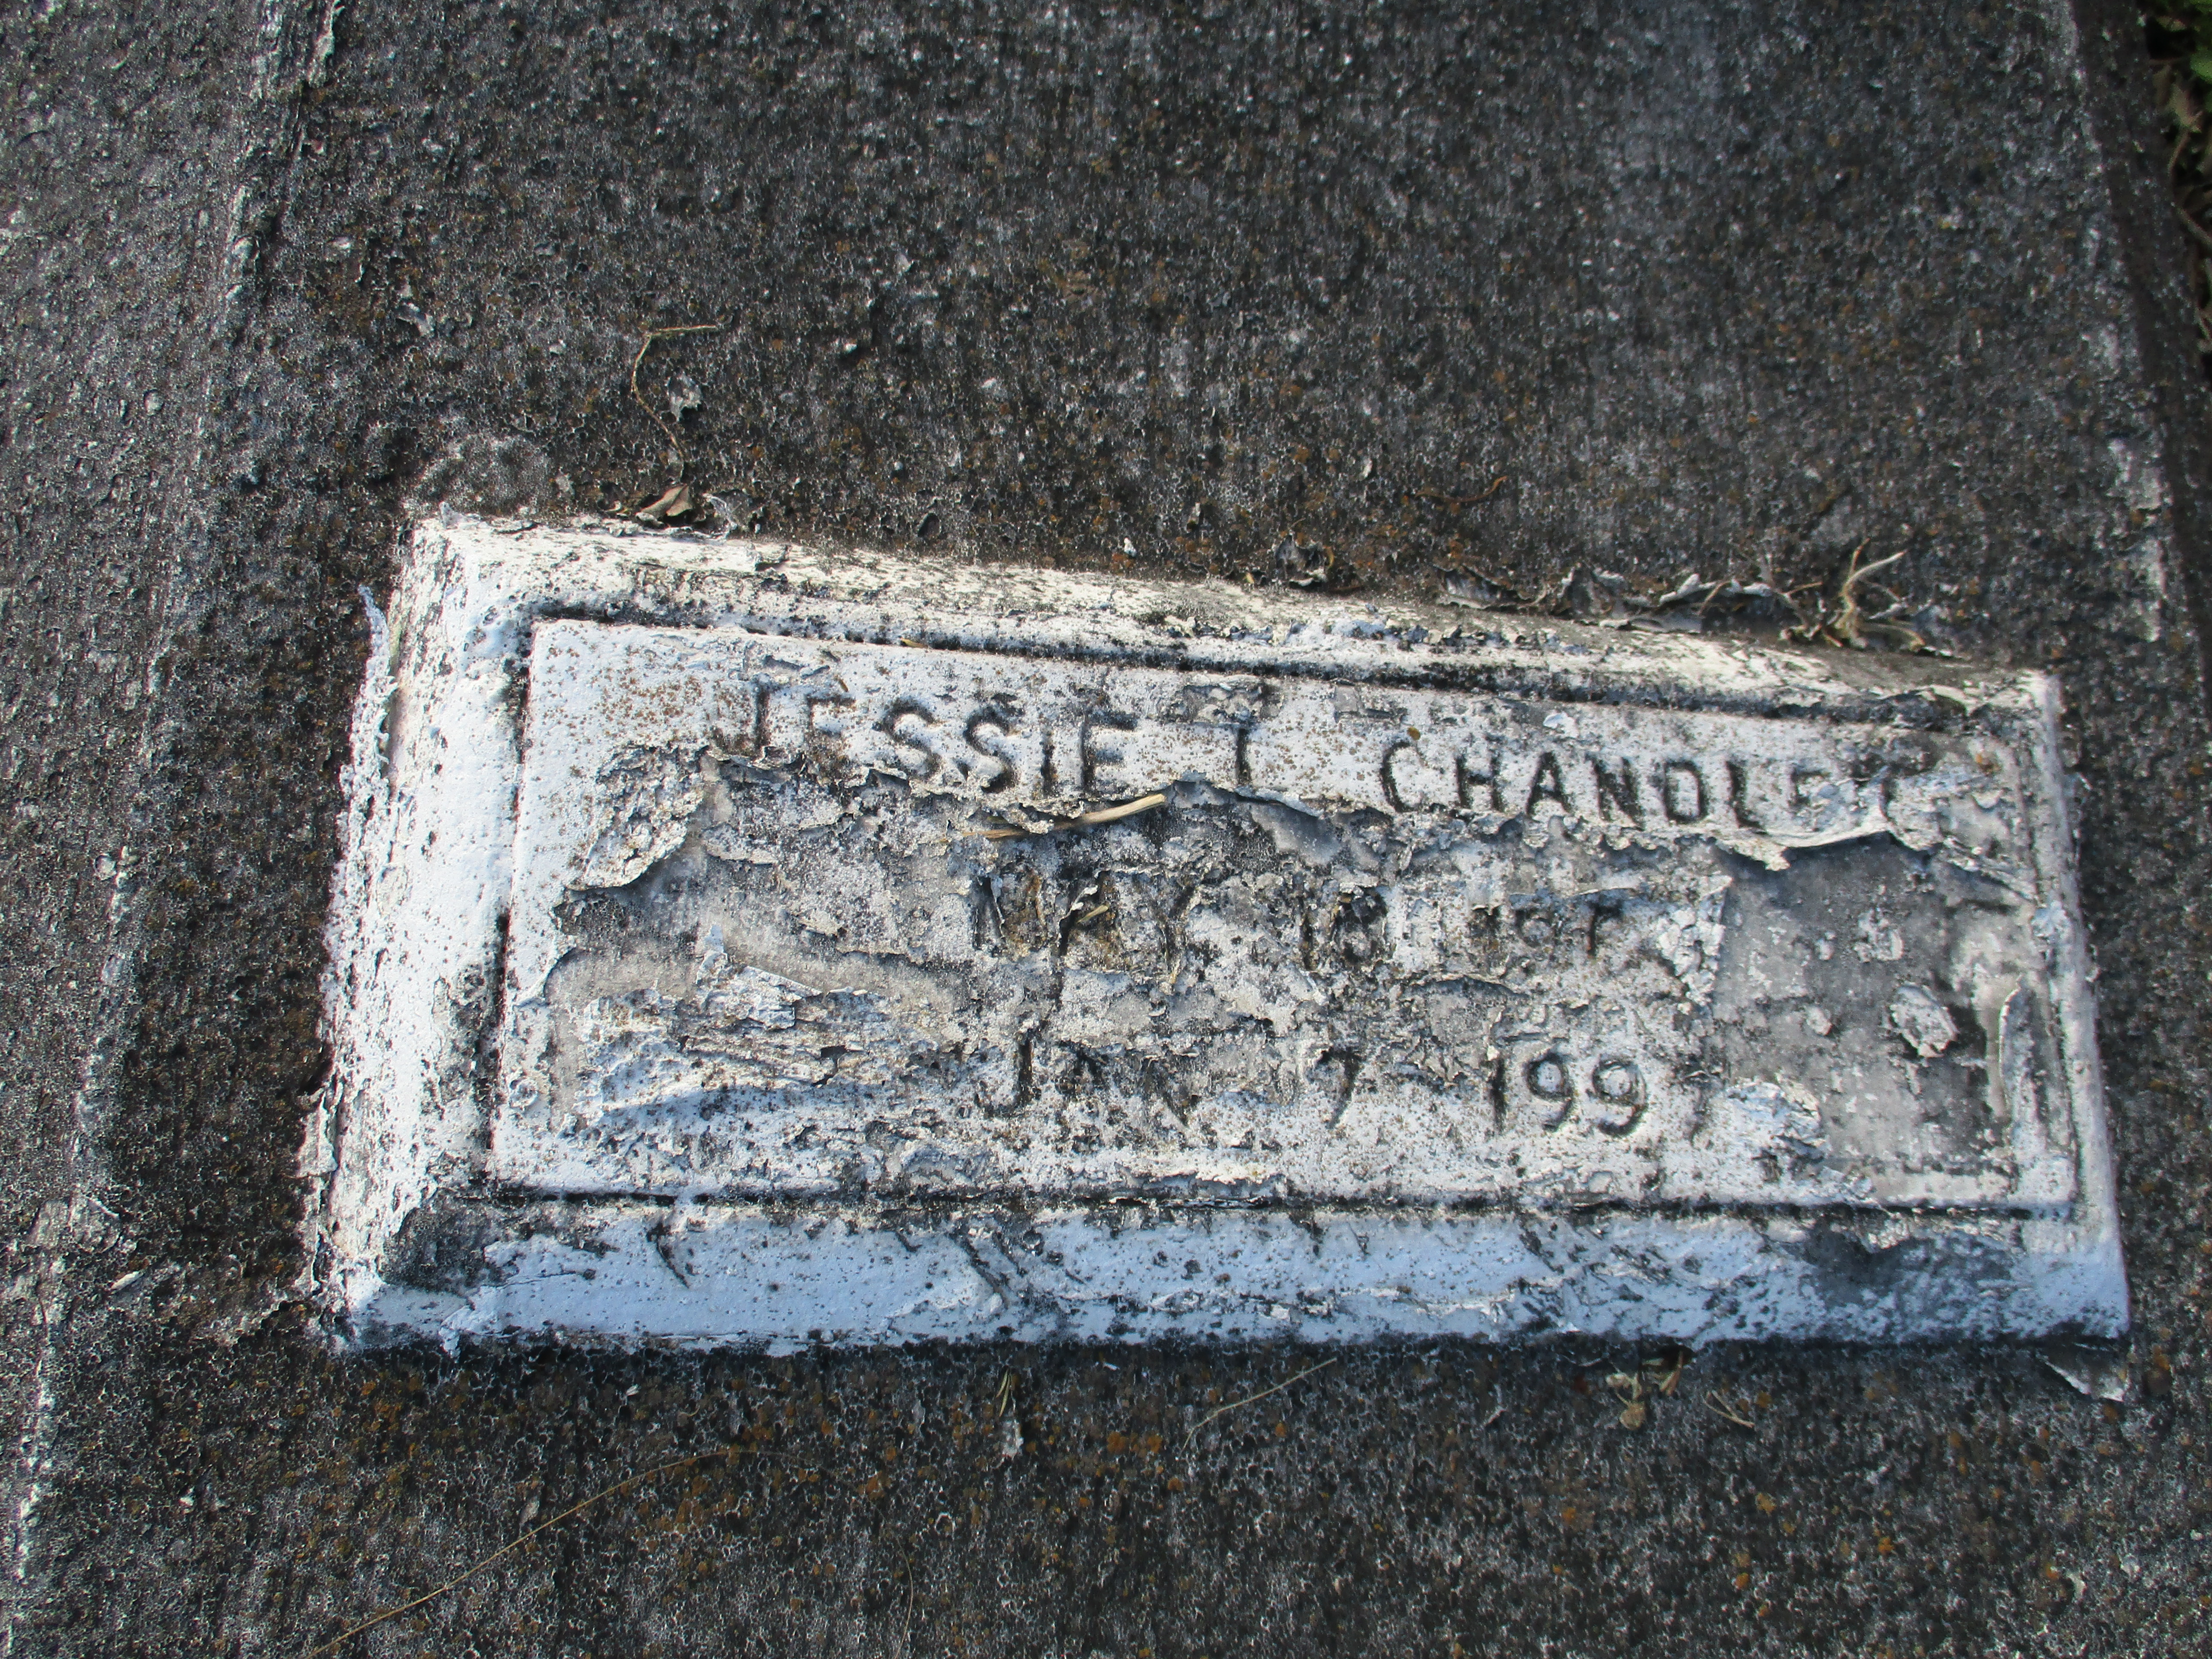 Jessie L Chandler